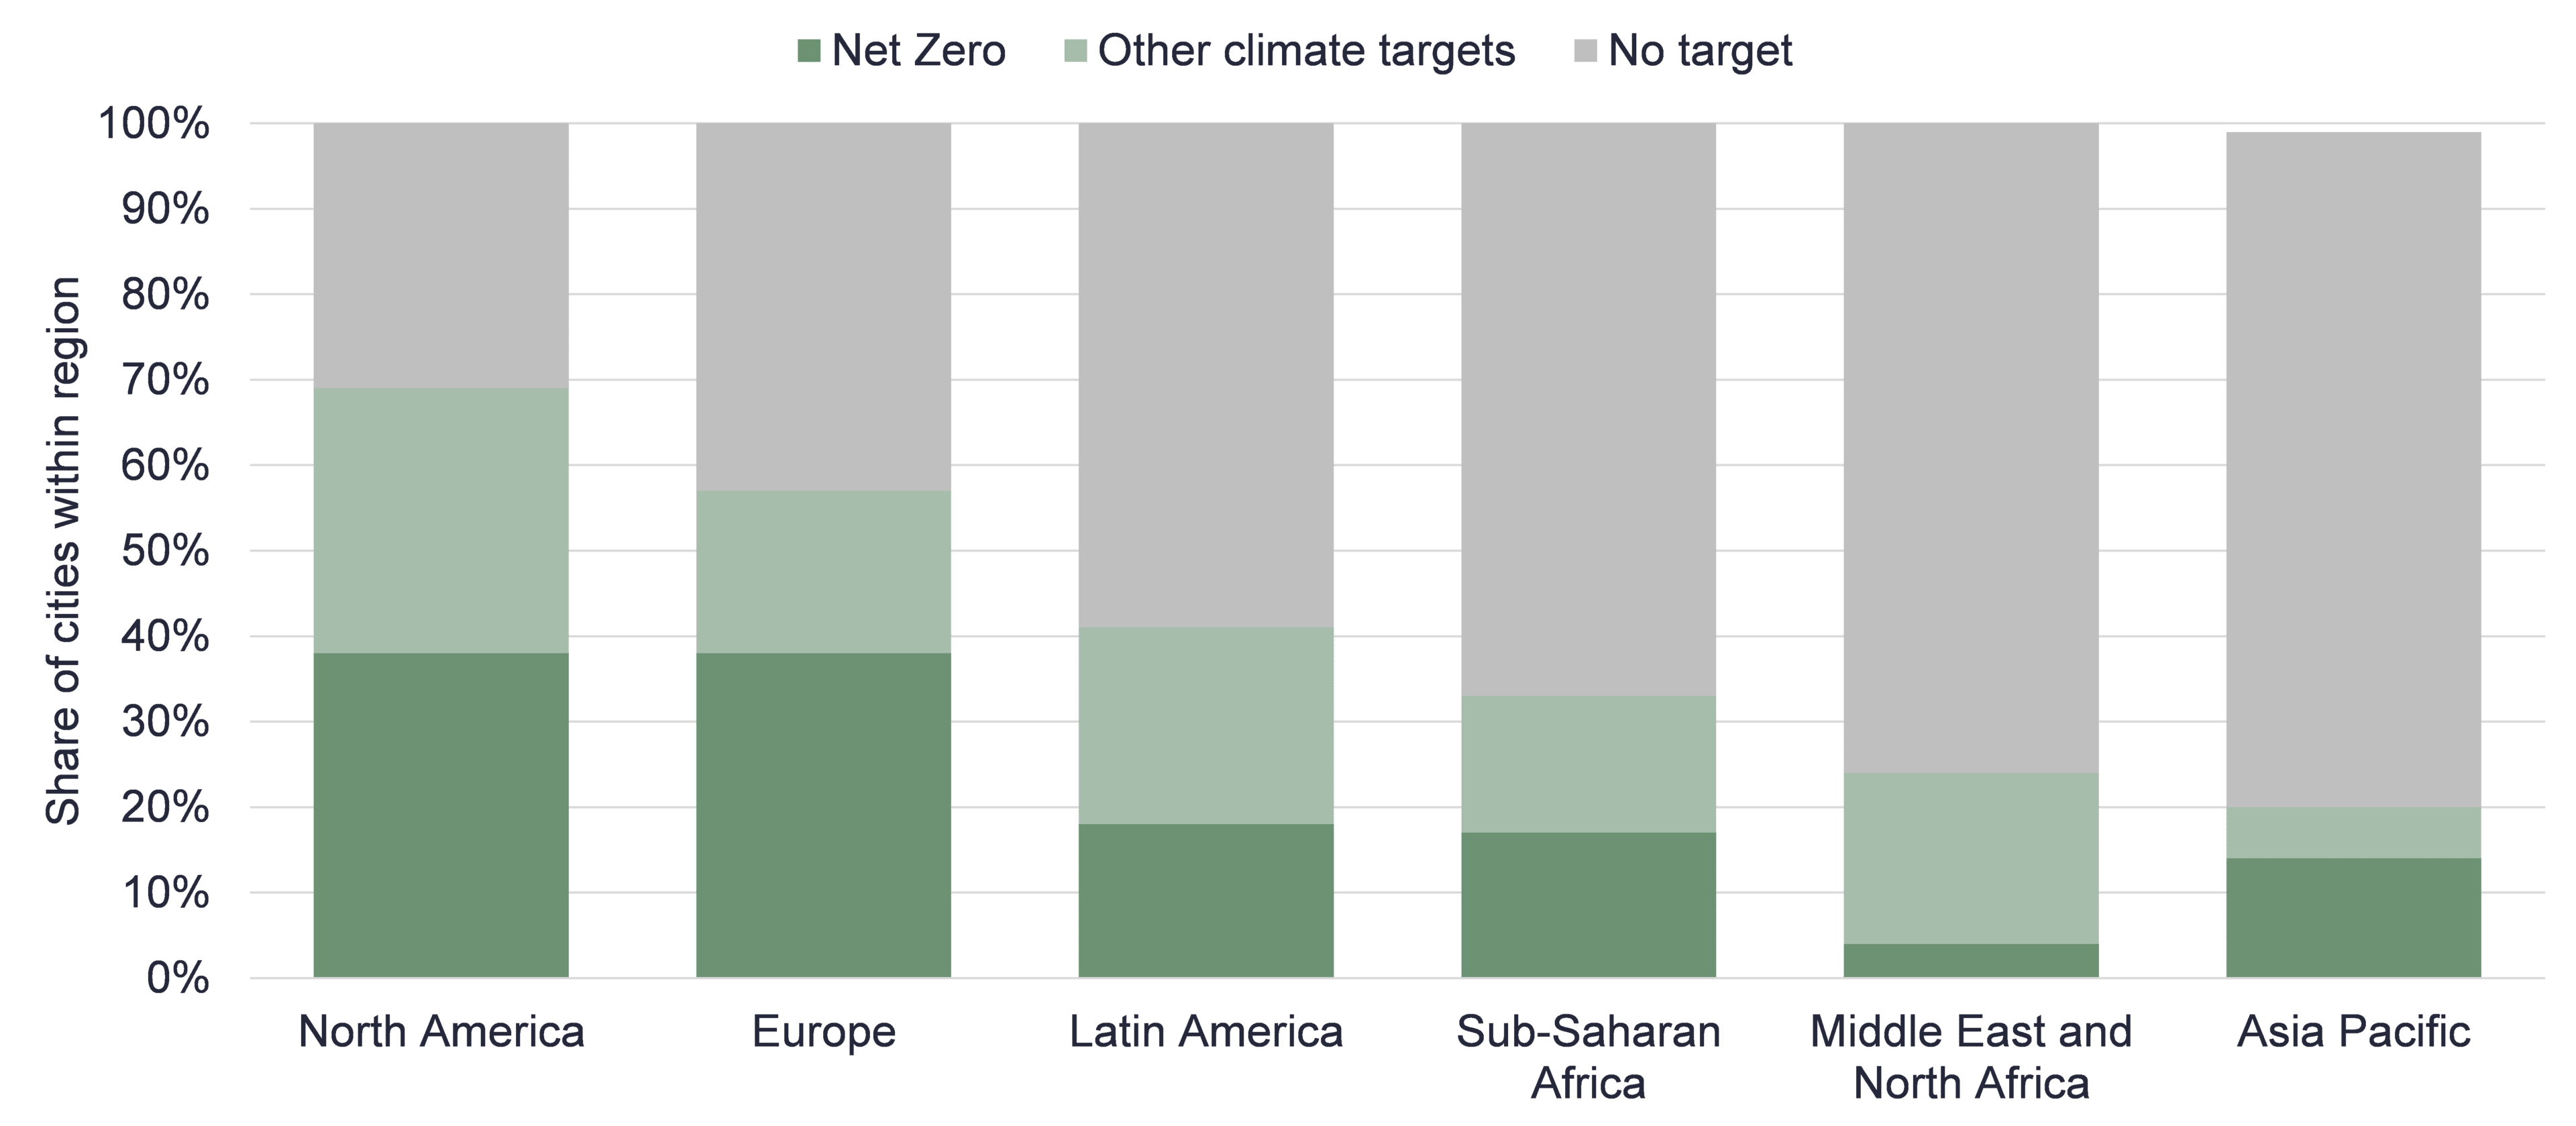 Miasta według regionu i rodzaju celu klimatycznego